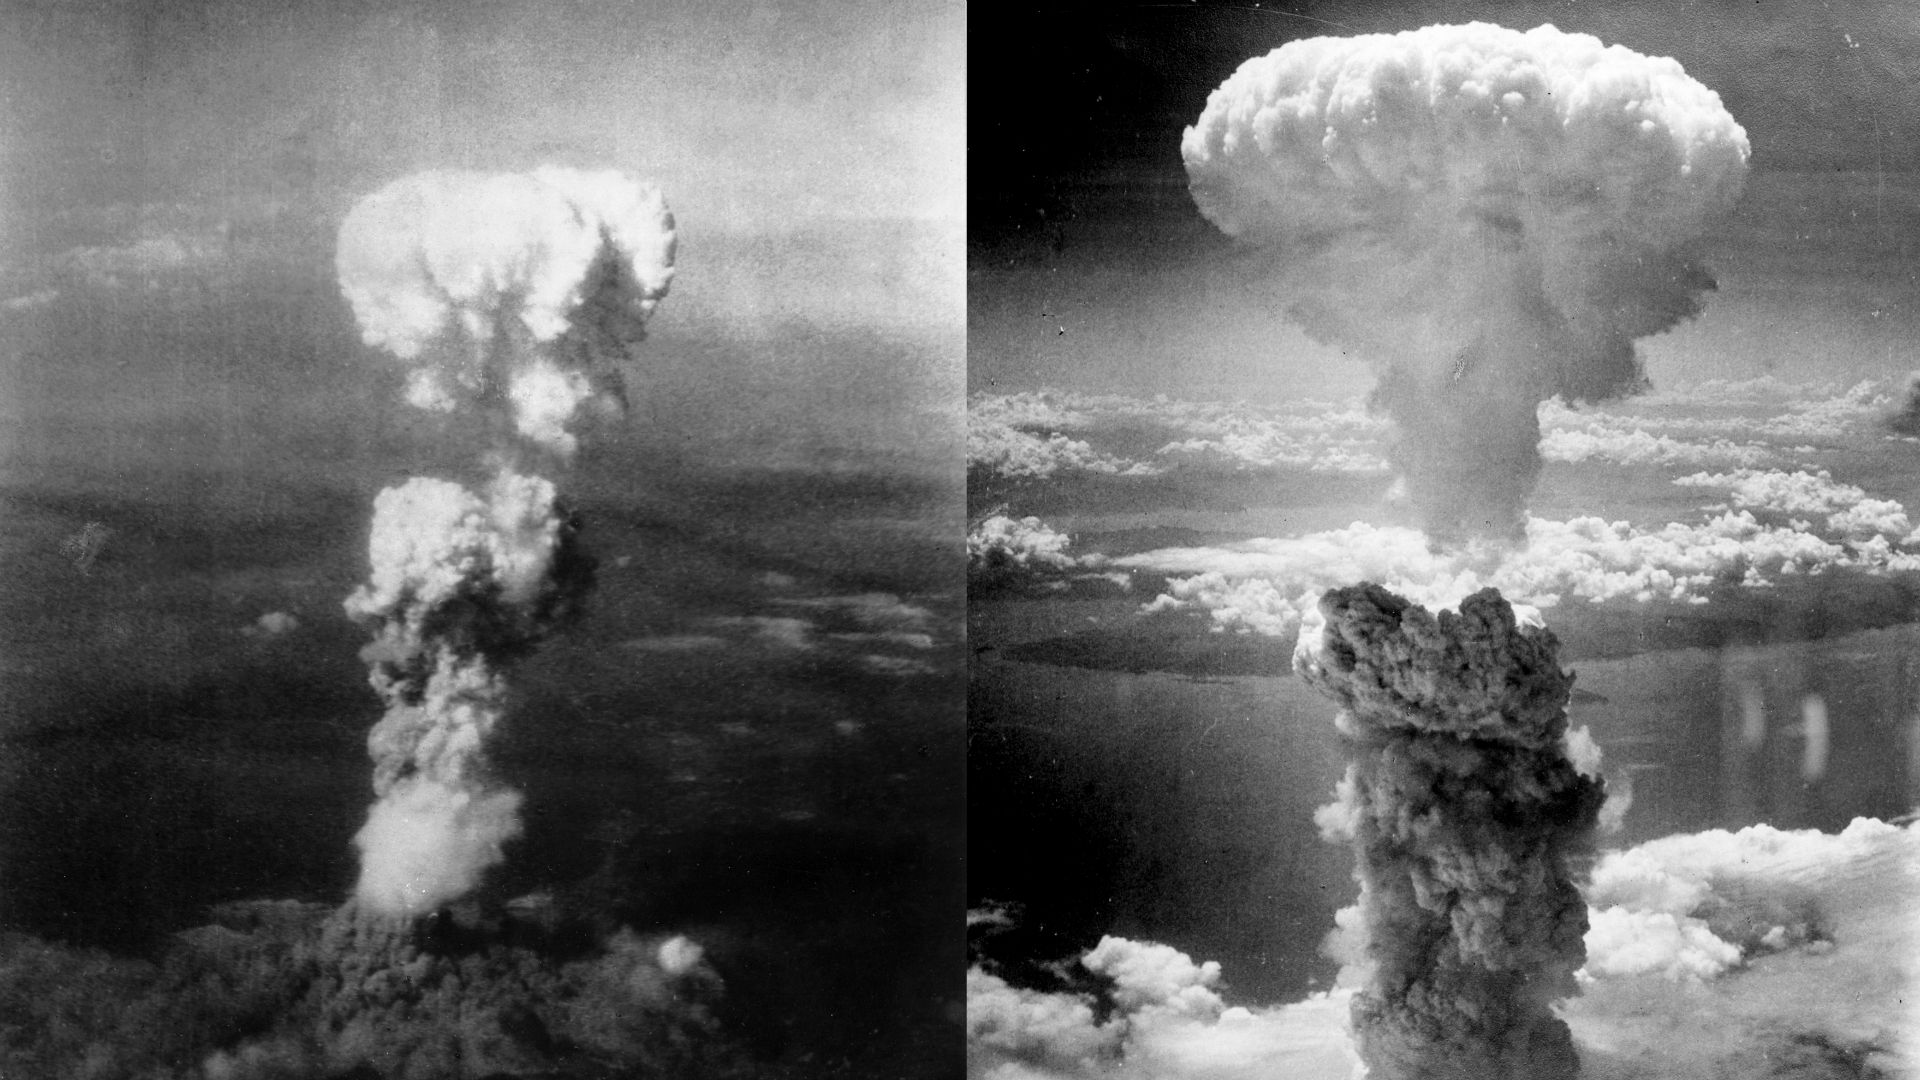 À gauche, champignon atomique sur Hiroshima. Photographie prise par Georges R. Caron le 6 août 1945.
À droite, champignon atomique au-dessus de Nagasaki. Photographie prise par Charles Levy le 9 août 1945.
